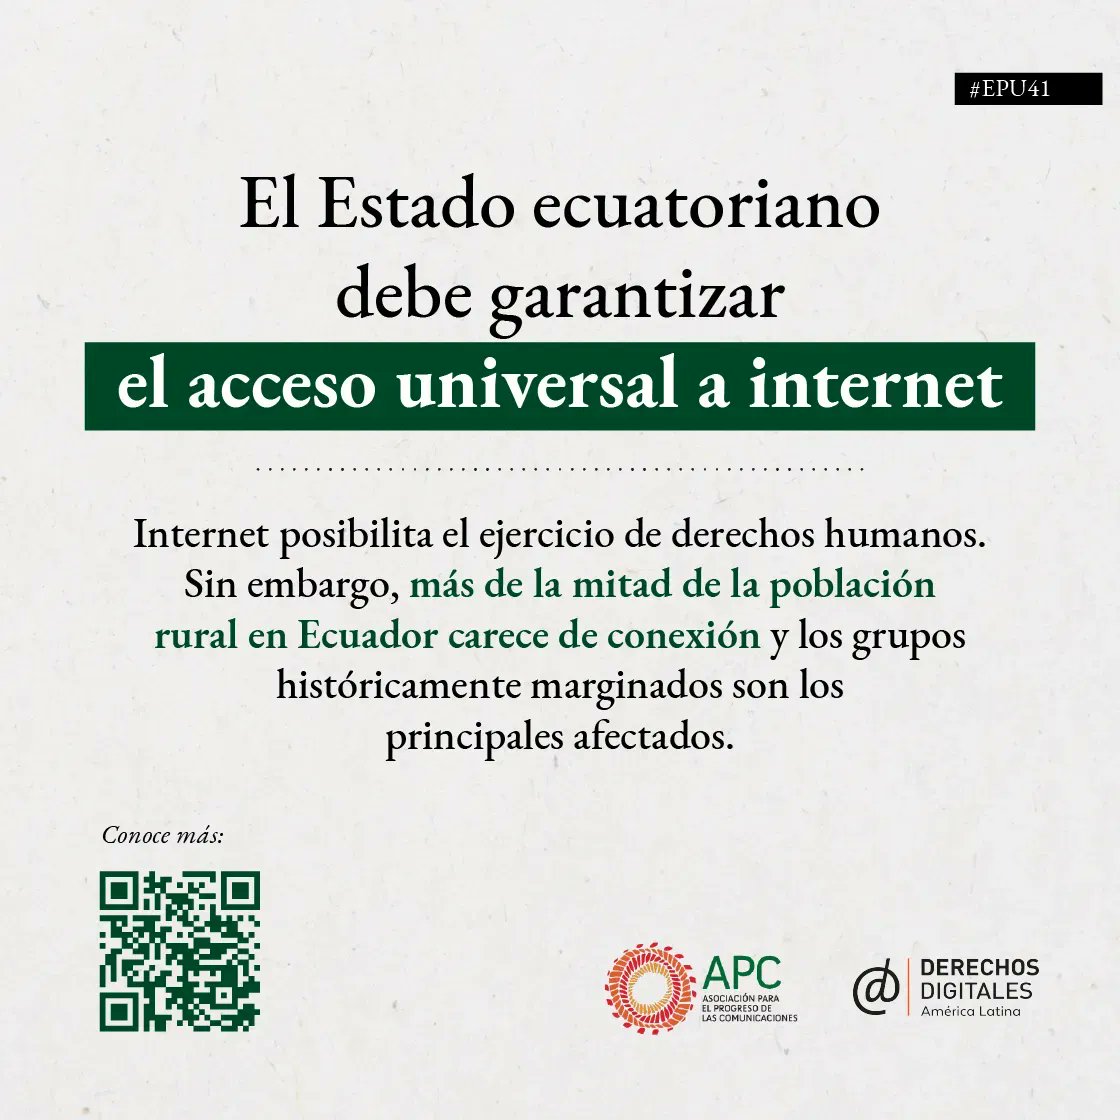 #EPU41 #Ecuador: Más de la población rural en Ecuador carece de conexión a internet. Es urgente que el estado ecuatoriano garantice el acceso universal a internet. Visita la página wwww.derechosdigitales.org/epu